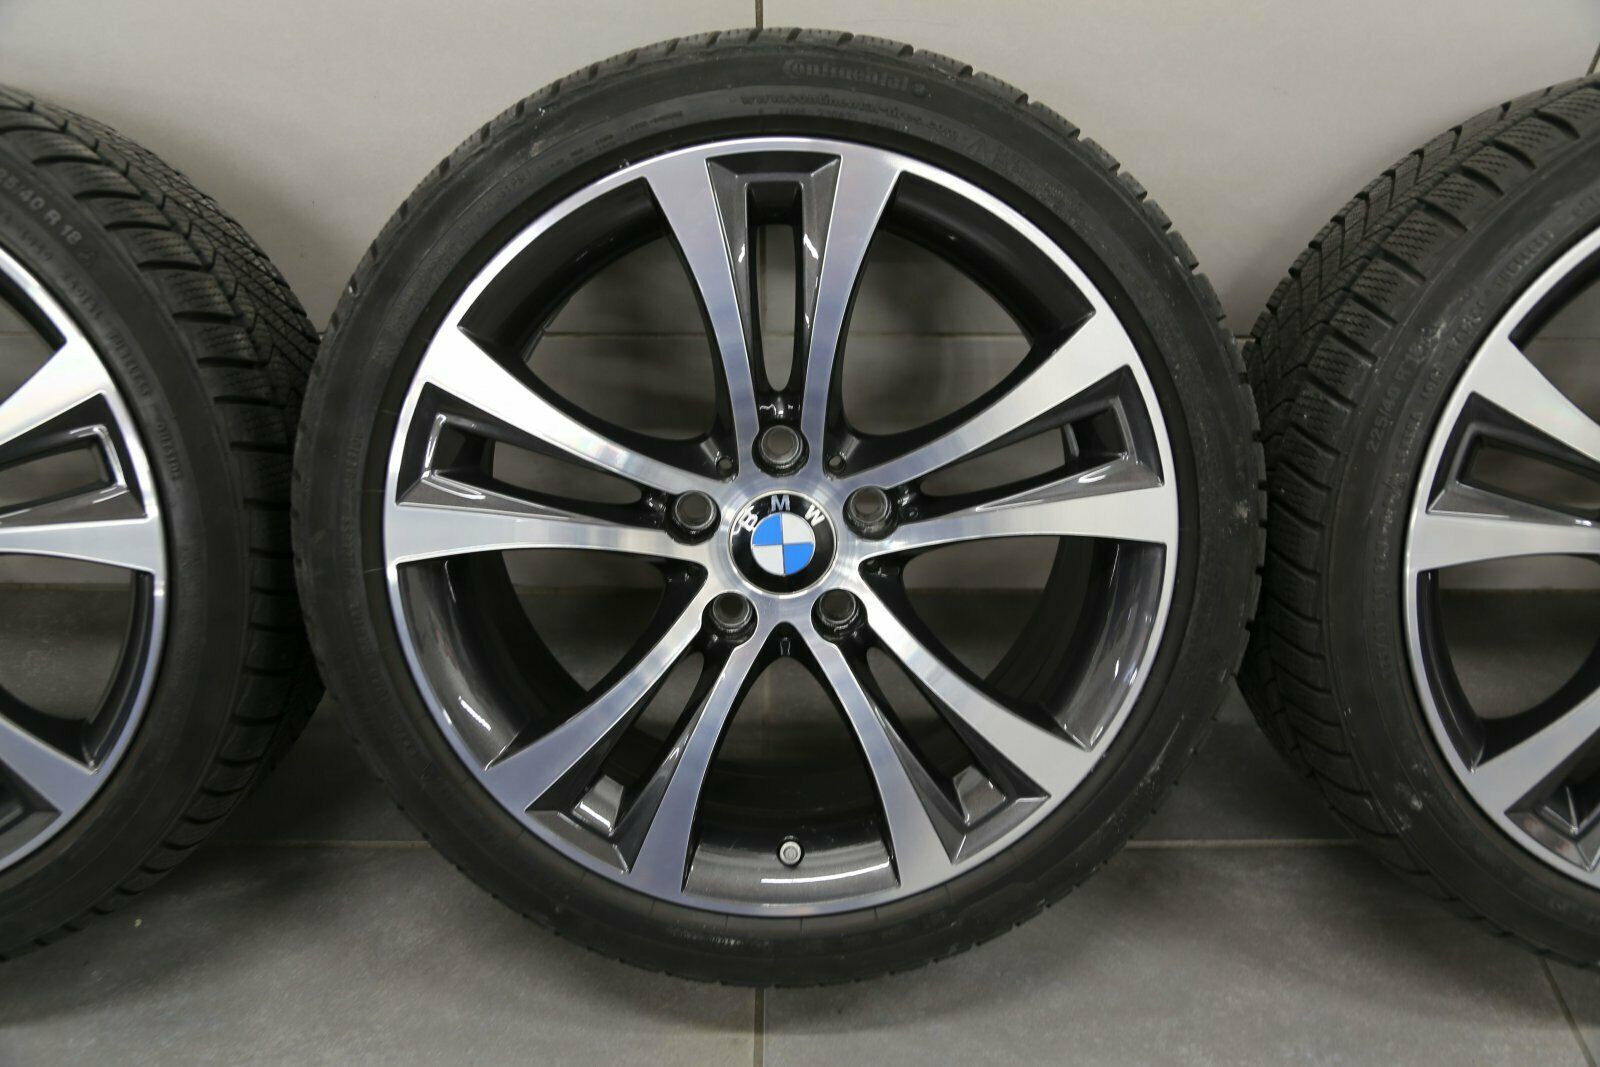 18-inch dubbelspaaks 384 winterwielen BMW 1 Serie F20 F21 2 Serie F22 F23 velgen 6796210